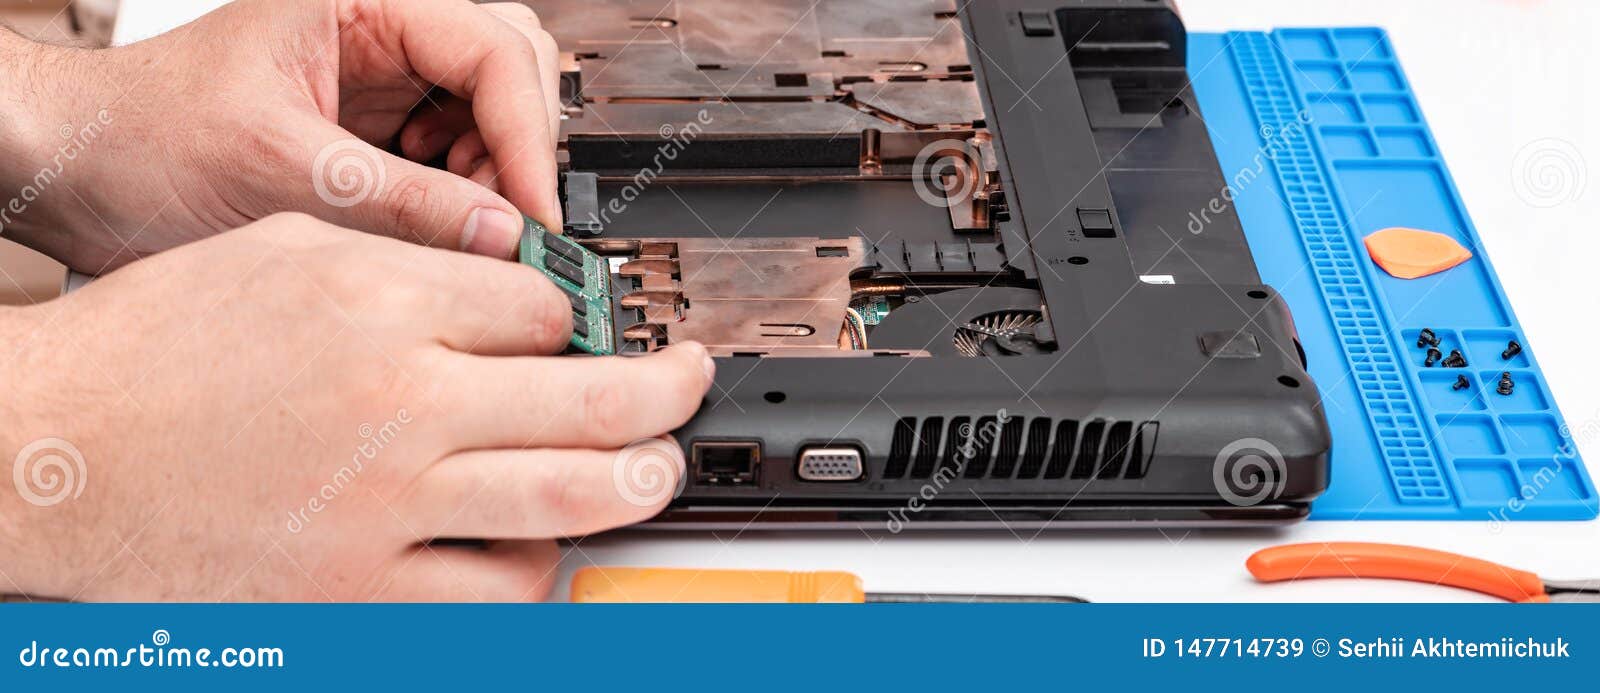 El Ingeniero Desmontar De RAM Desmontar Y Reparar Un Ordenador Imagen de archivo - Imagen de arreglo: 147714739